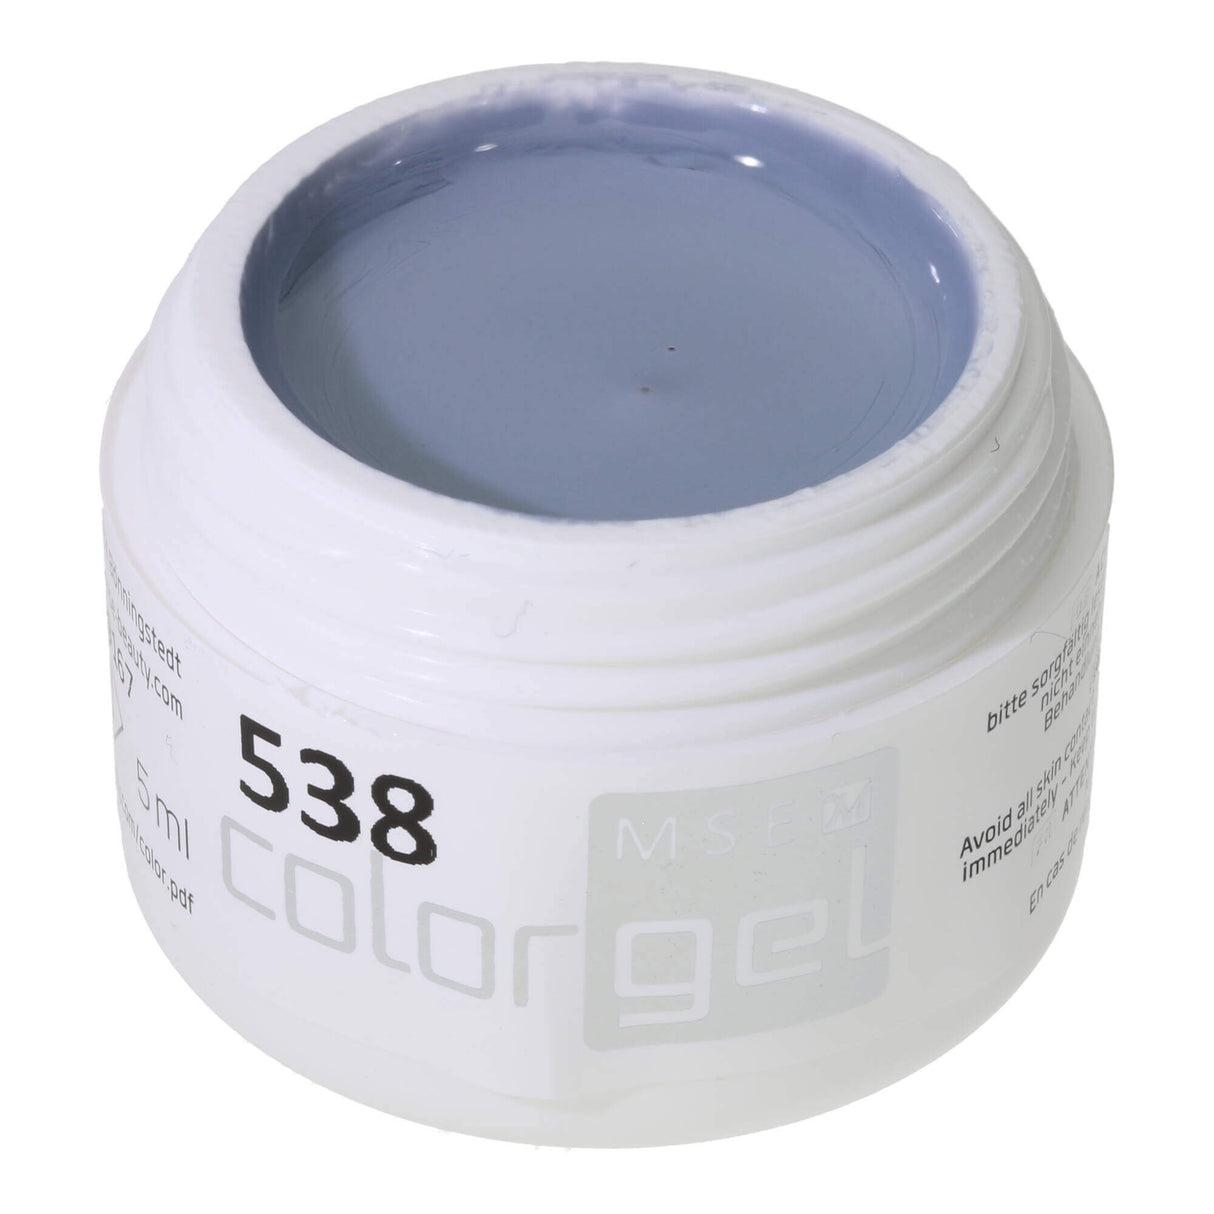 # 538 Premium-PURE Color Gel 5ml màu xám